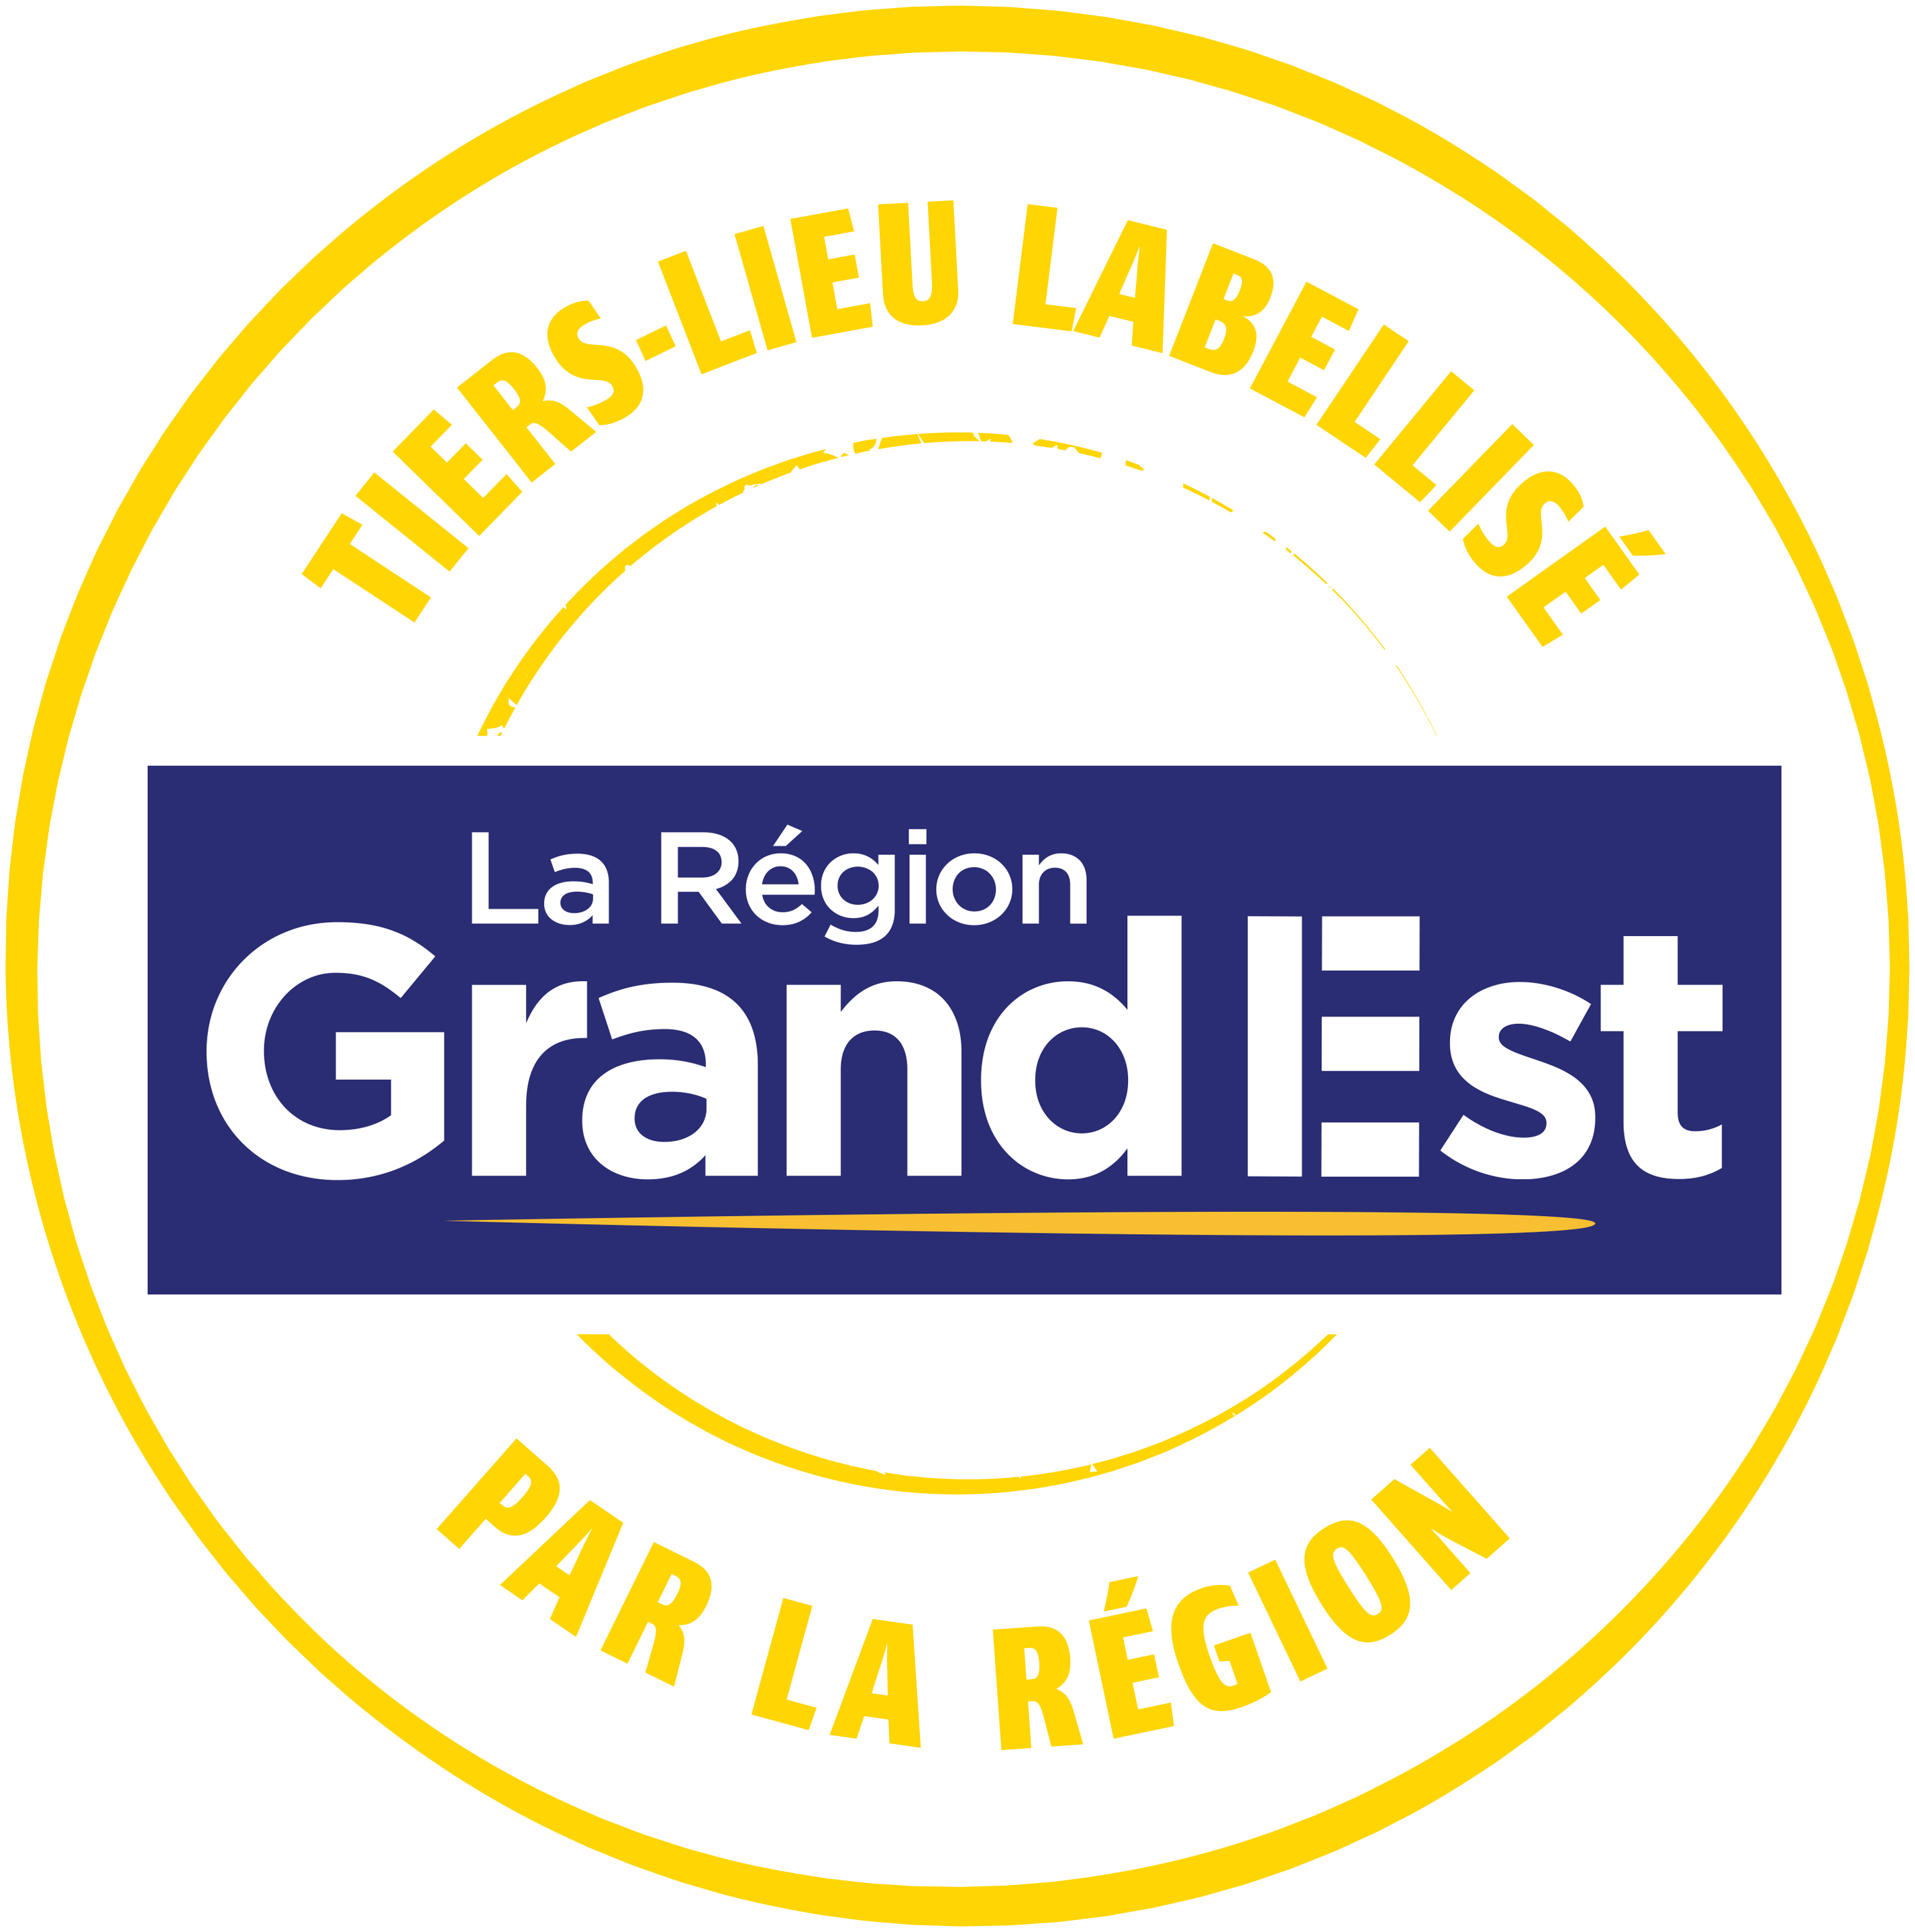 Fabéon, Tiers-Lieu labellisé par la Région Grand Est !